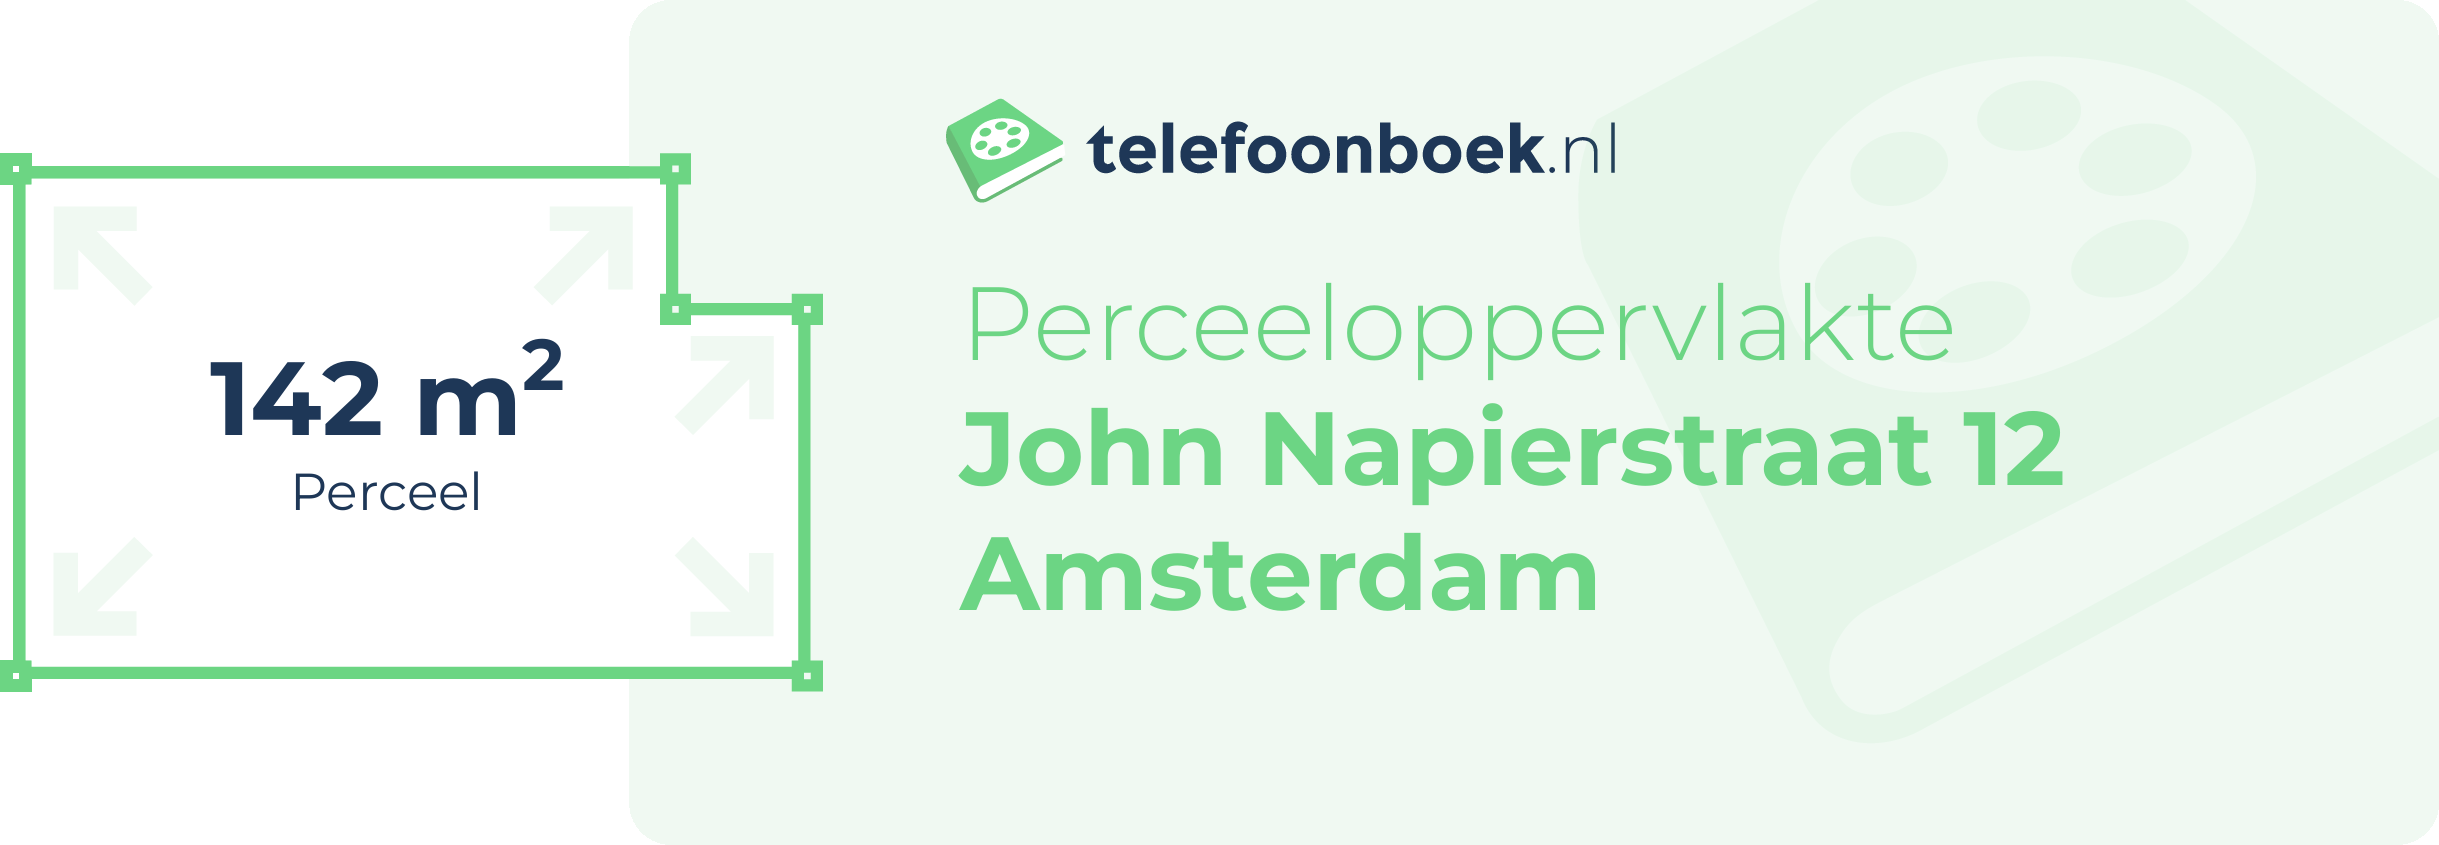 Perceeloppervlakte John Napierstraat 12 Amsterdam